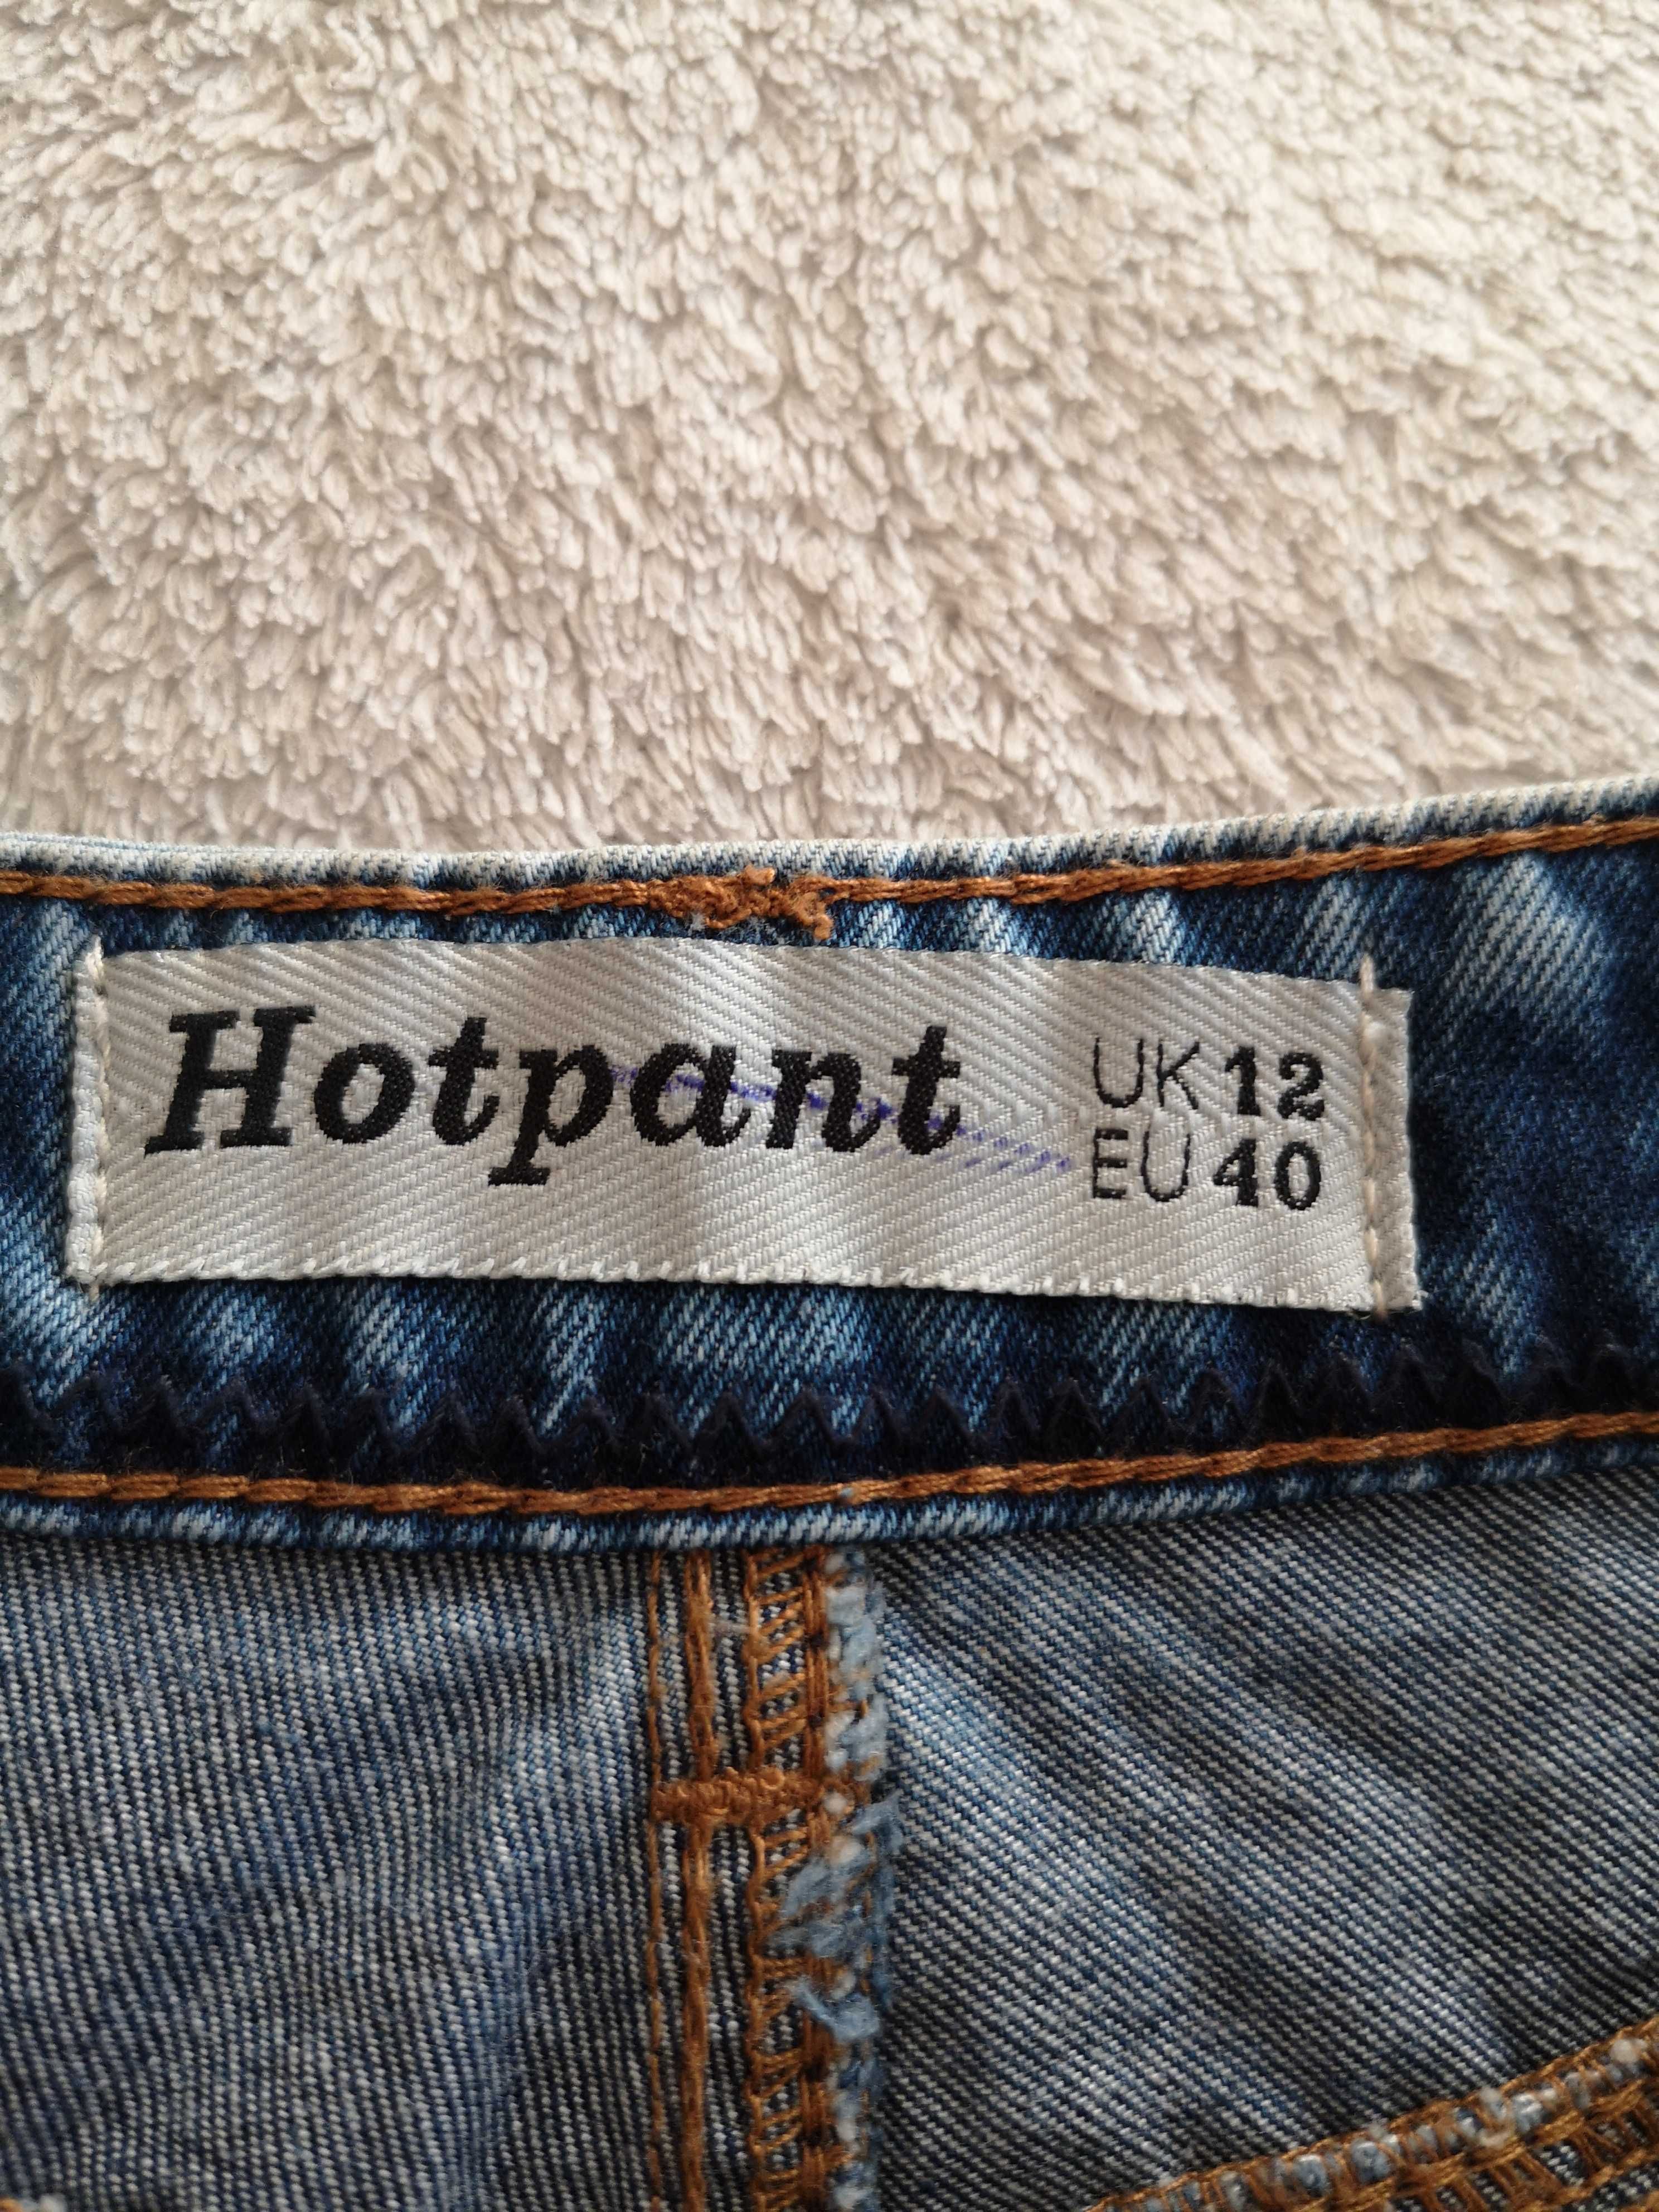 Strzępione jeansowe krótkie spodenki szorty dziury New Look 40 j nowe